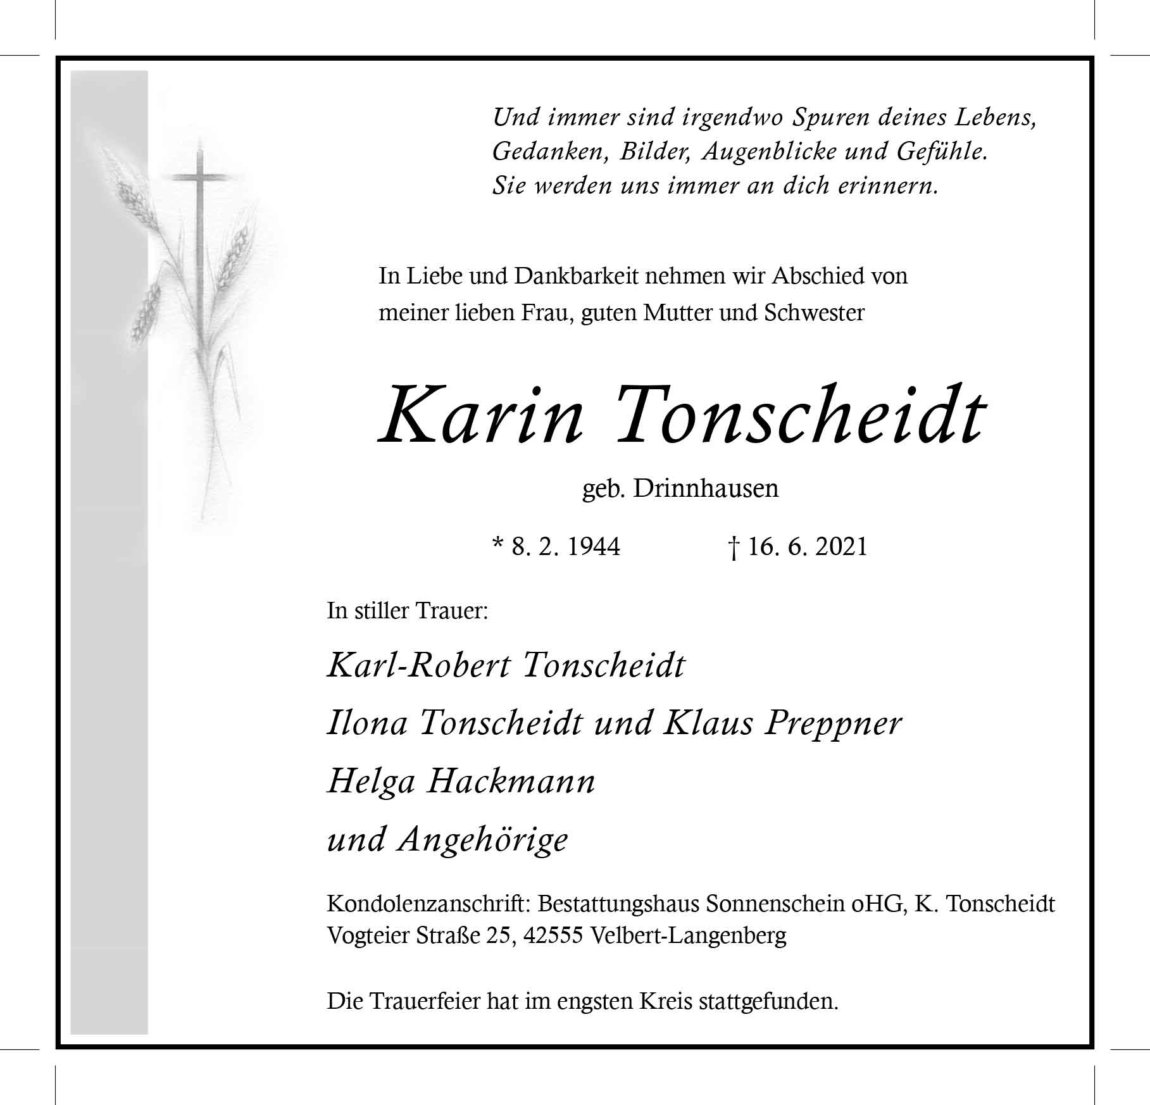 26.06.2021_Tonscheidt-Karin.jpg